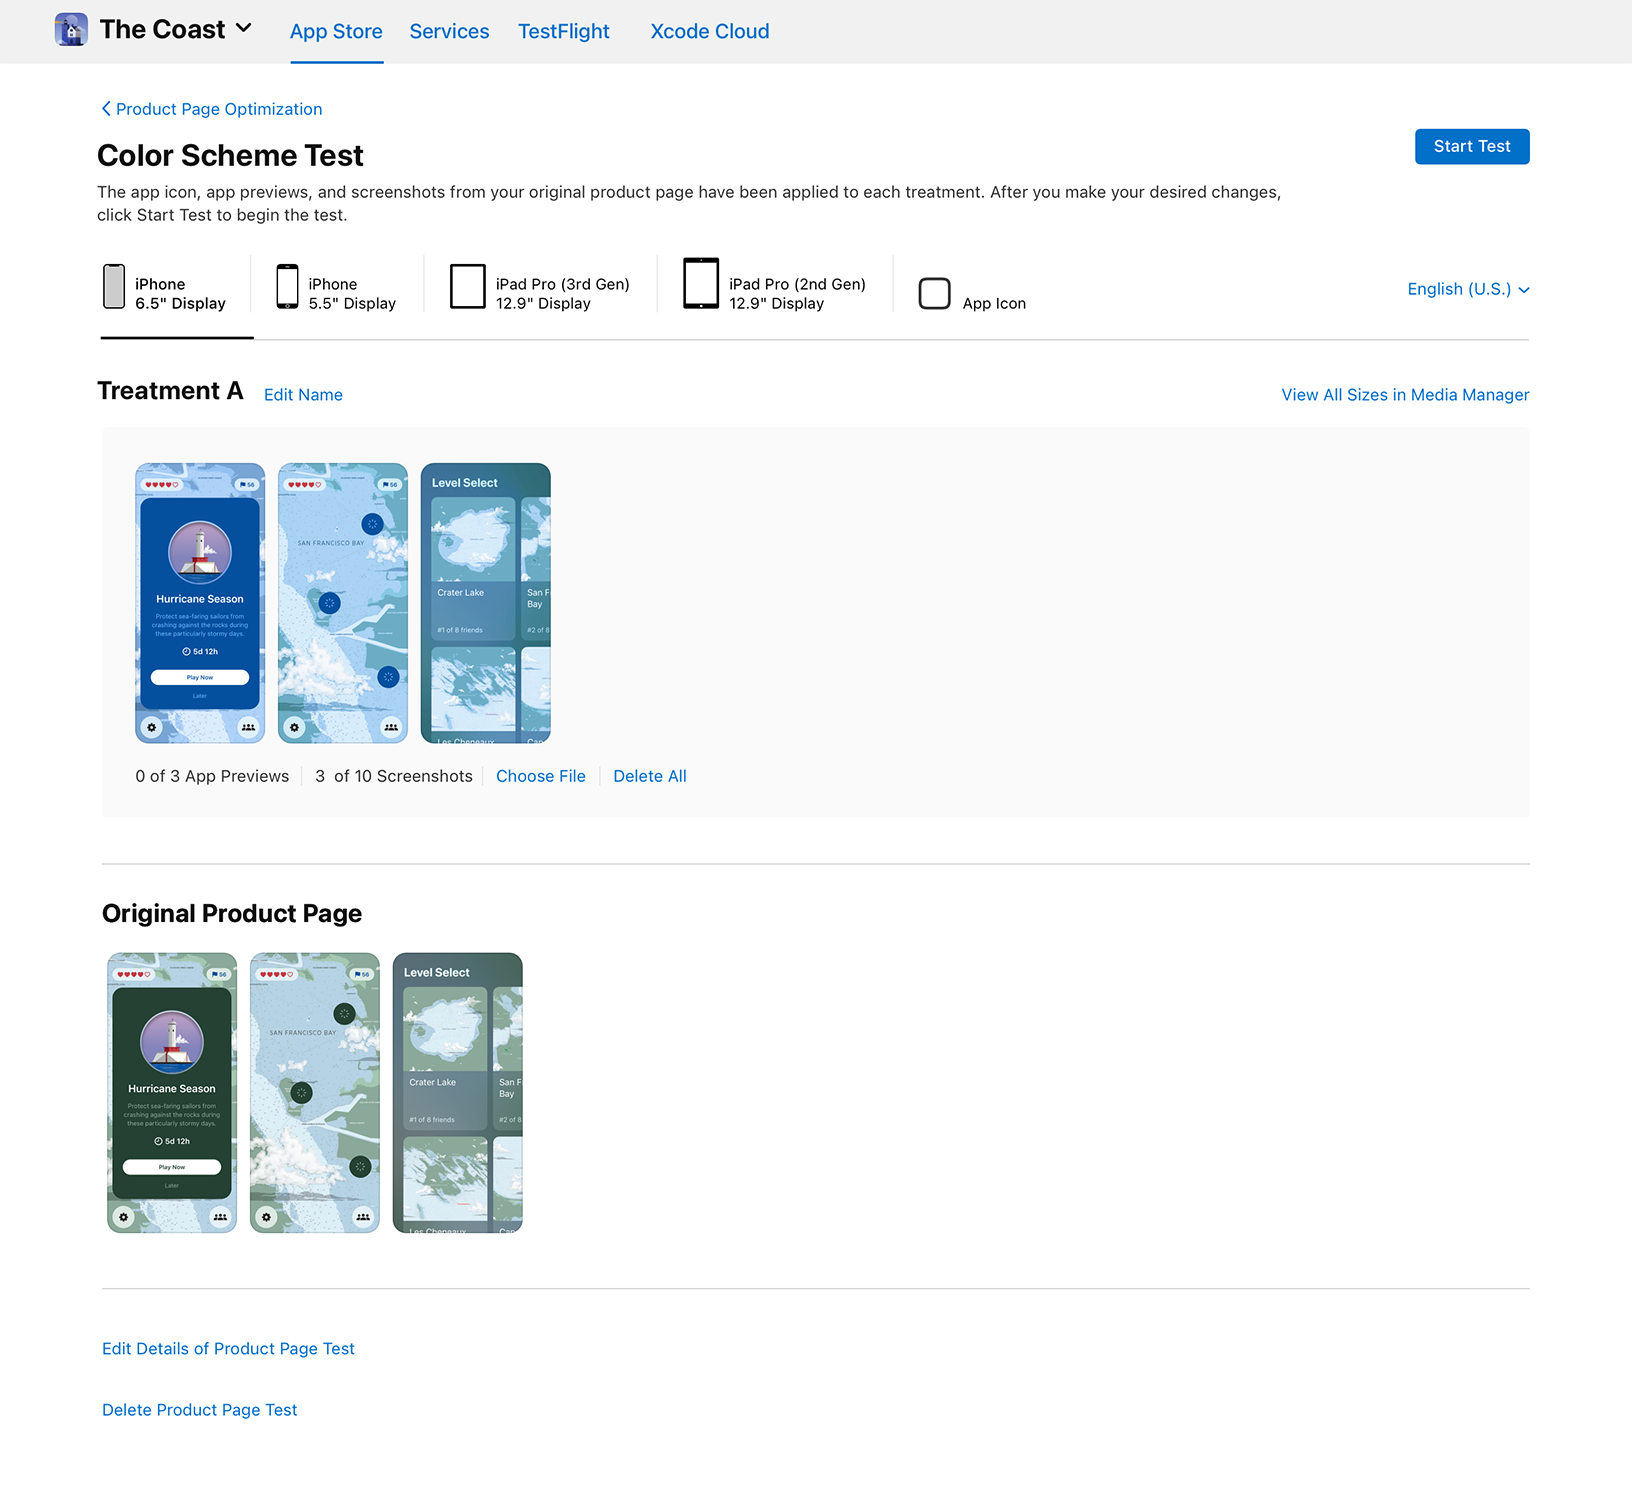 App Store Connect 产品页测试，对比了 The Coast App 采用不同配色的测试方案